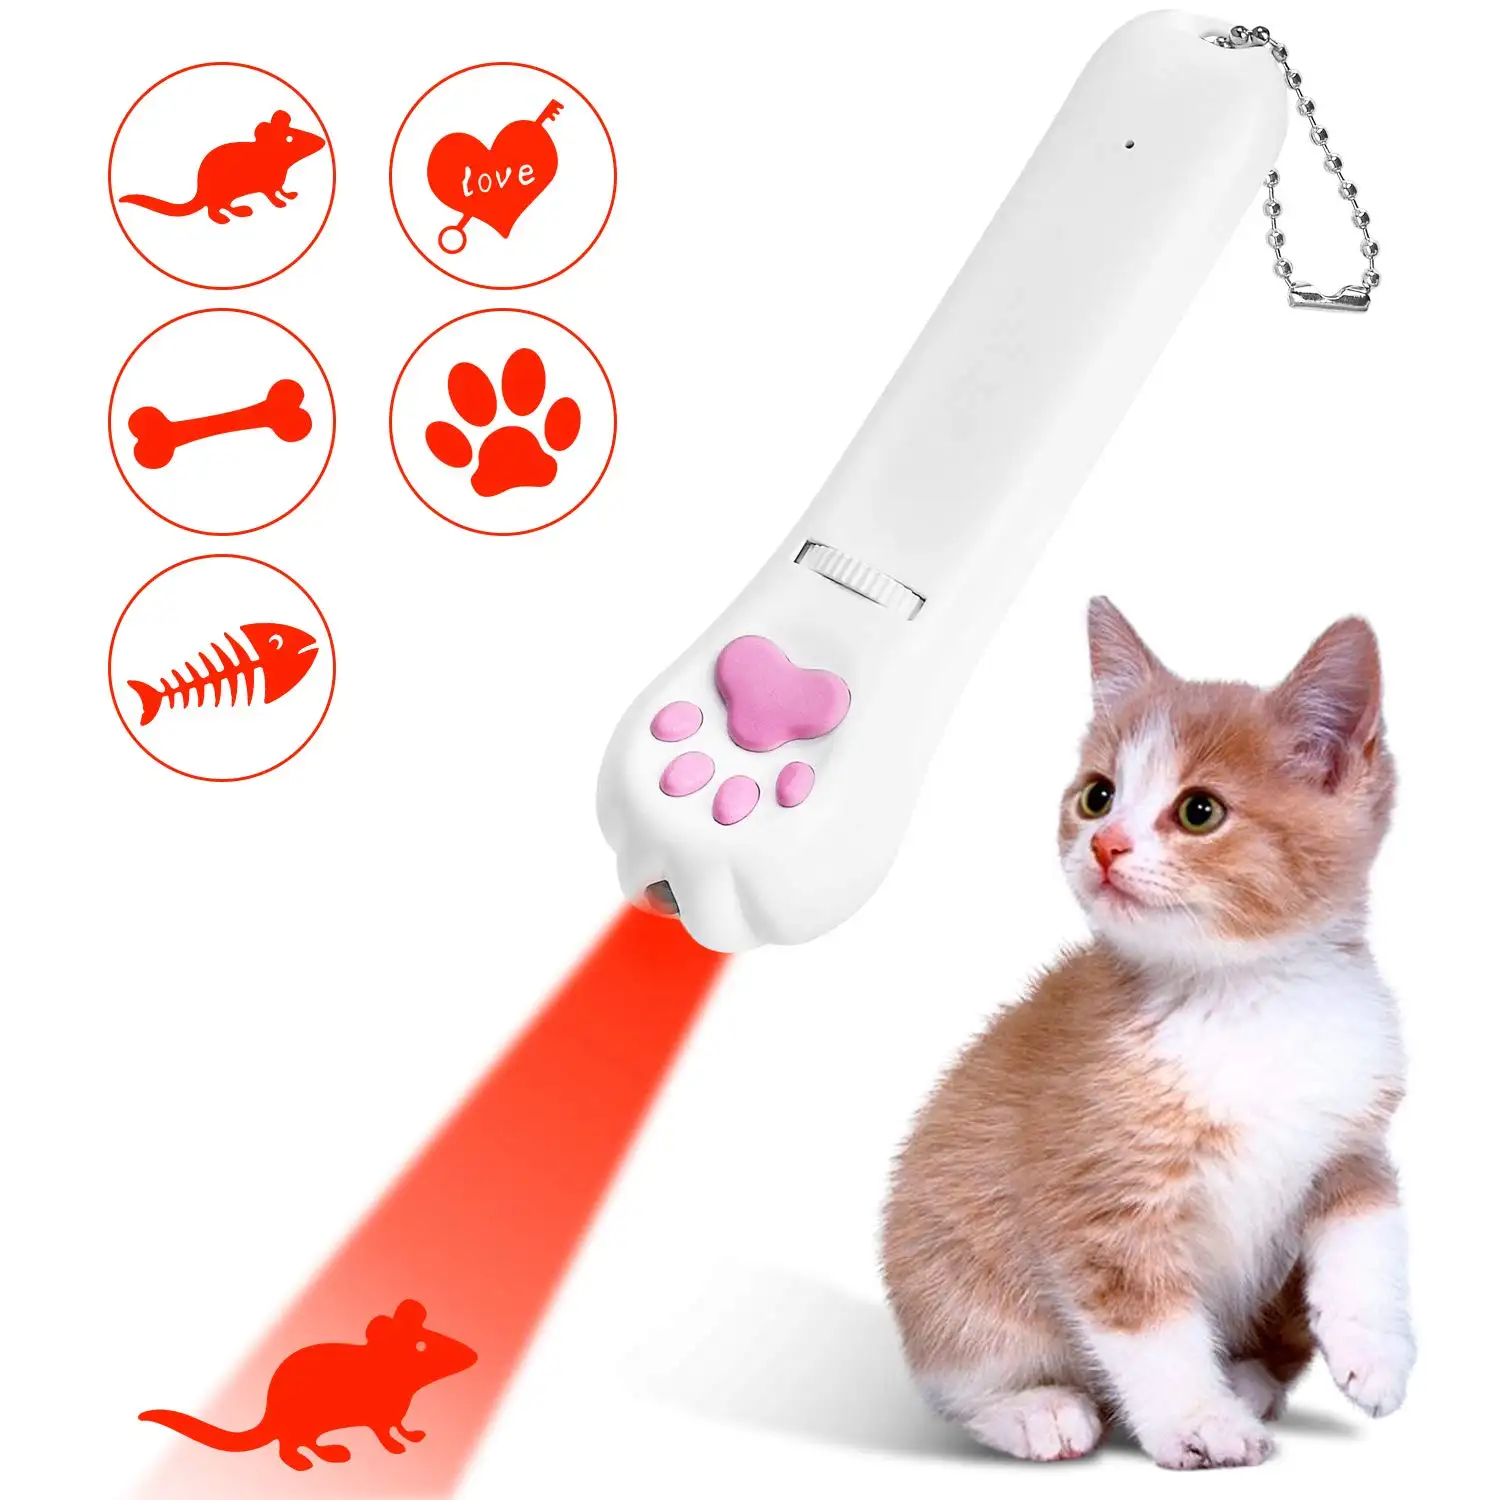 Umione đa chức năng Pet mèo đồ chơi 5 hình ảnh Laser LED con trỏ Paw hình 3 chế độ chiếu sáng Pet công cụ đào tạo cho Cat Dog Chaser